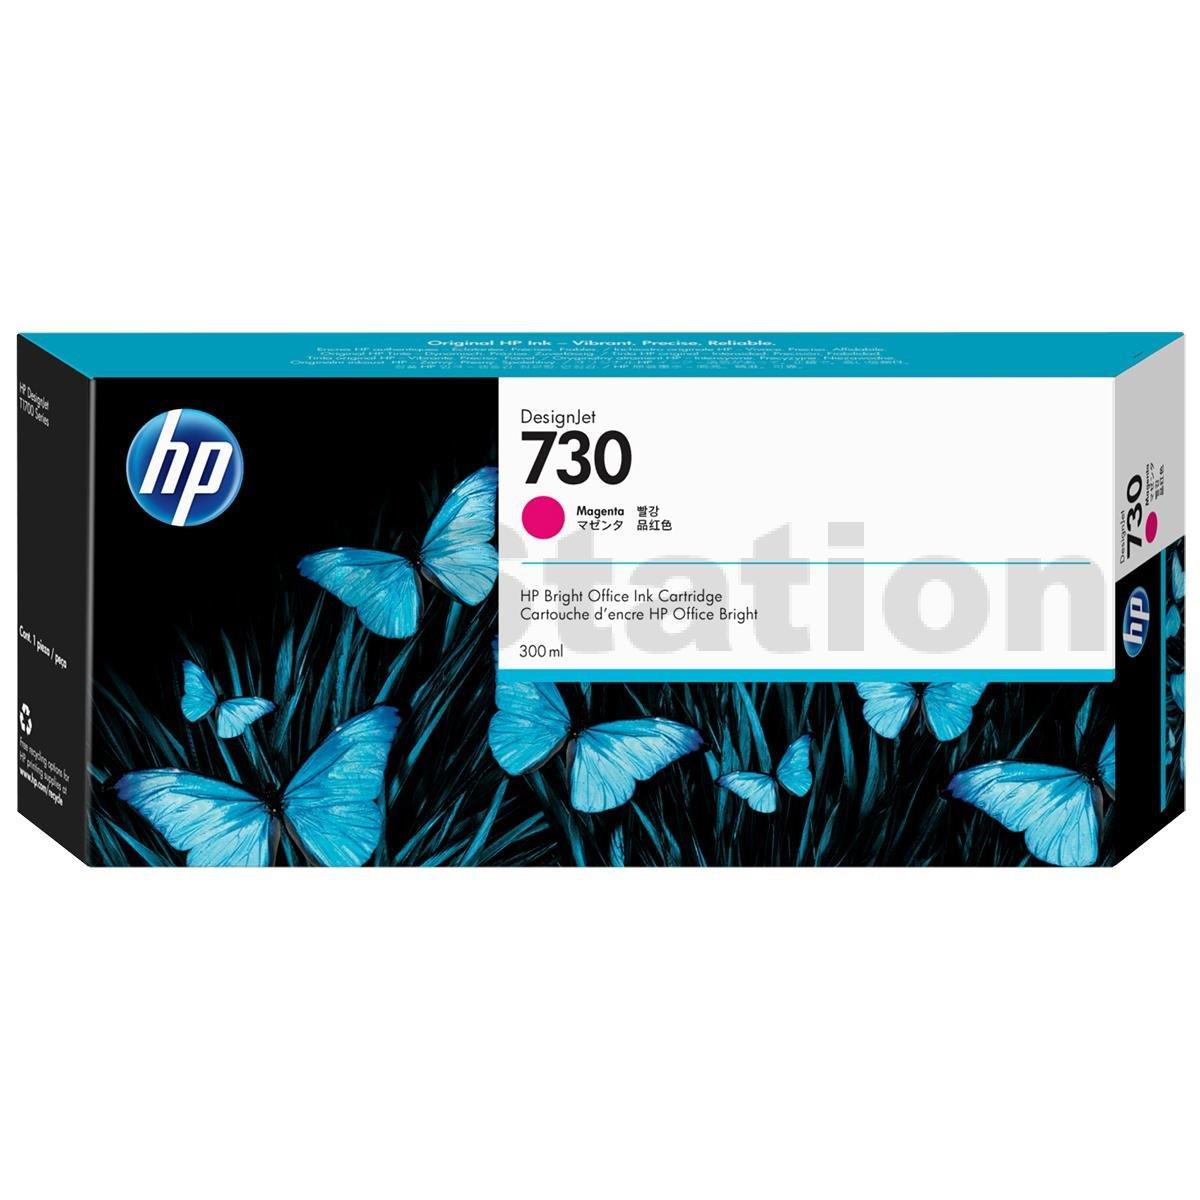 HP Designjet T2600 Magenta Ink Cartridge